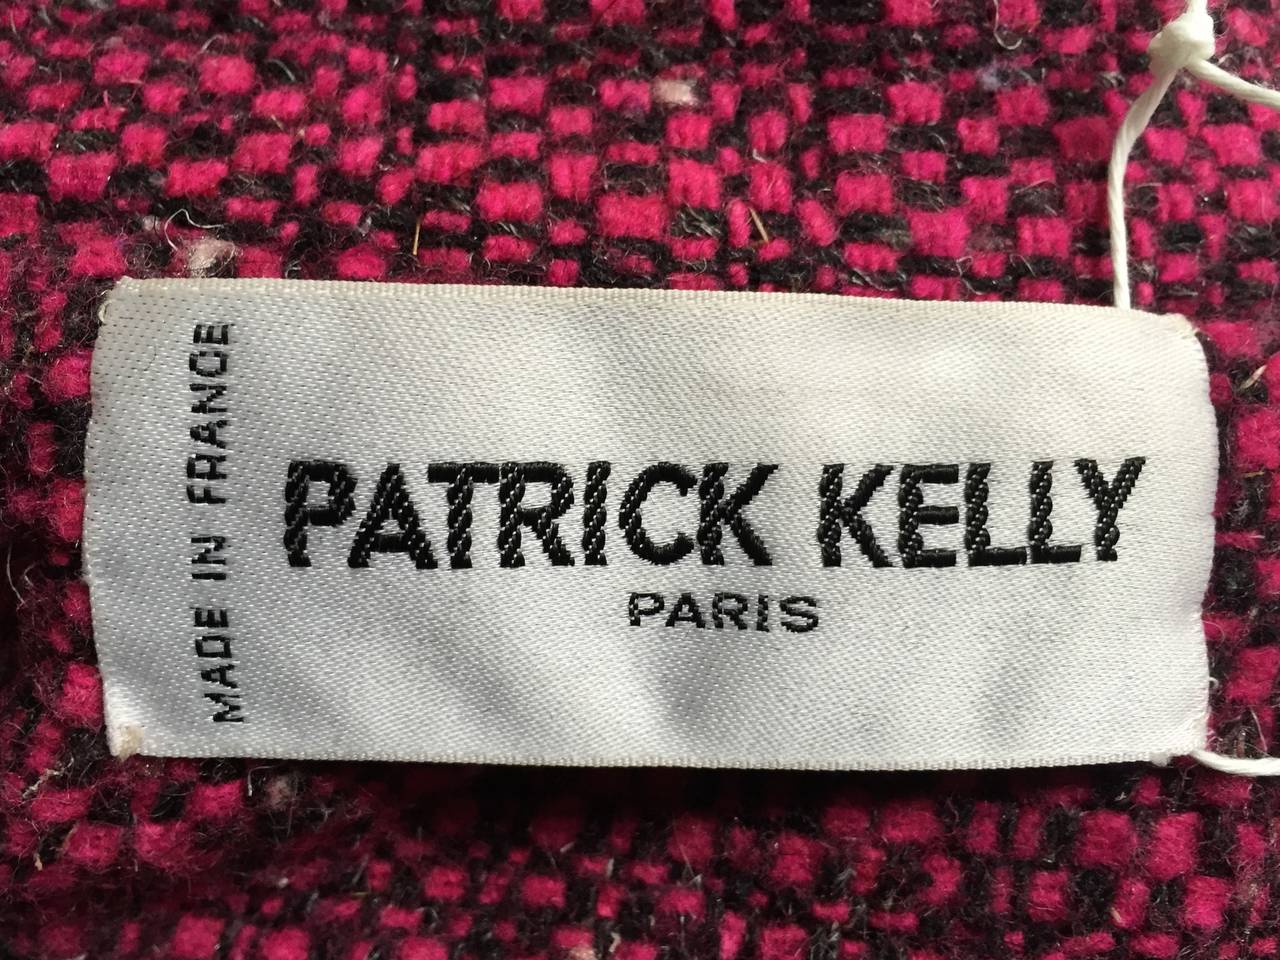 Patrick Kelly Paris 1988 wool suit size 4. 5